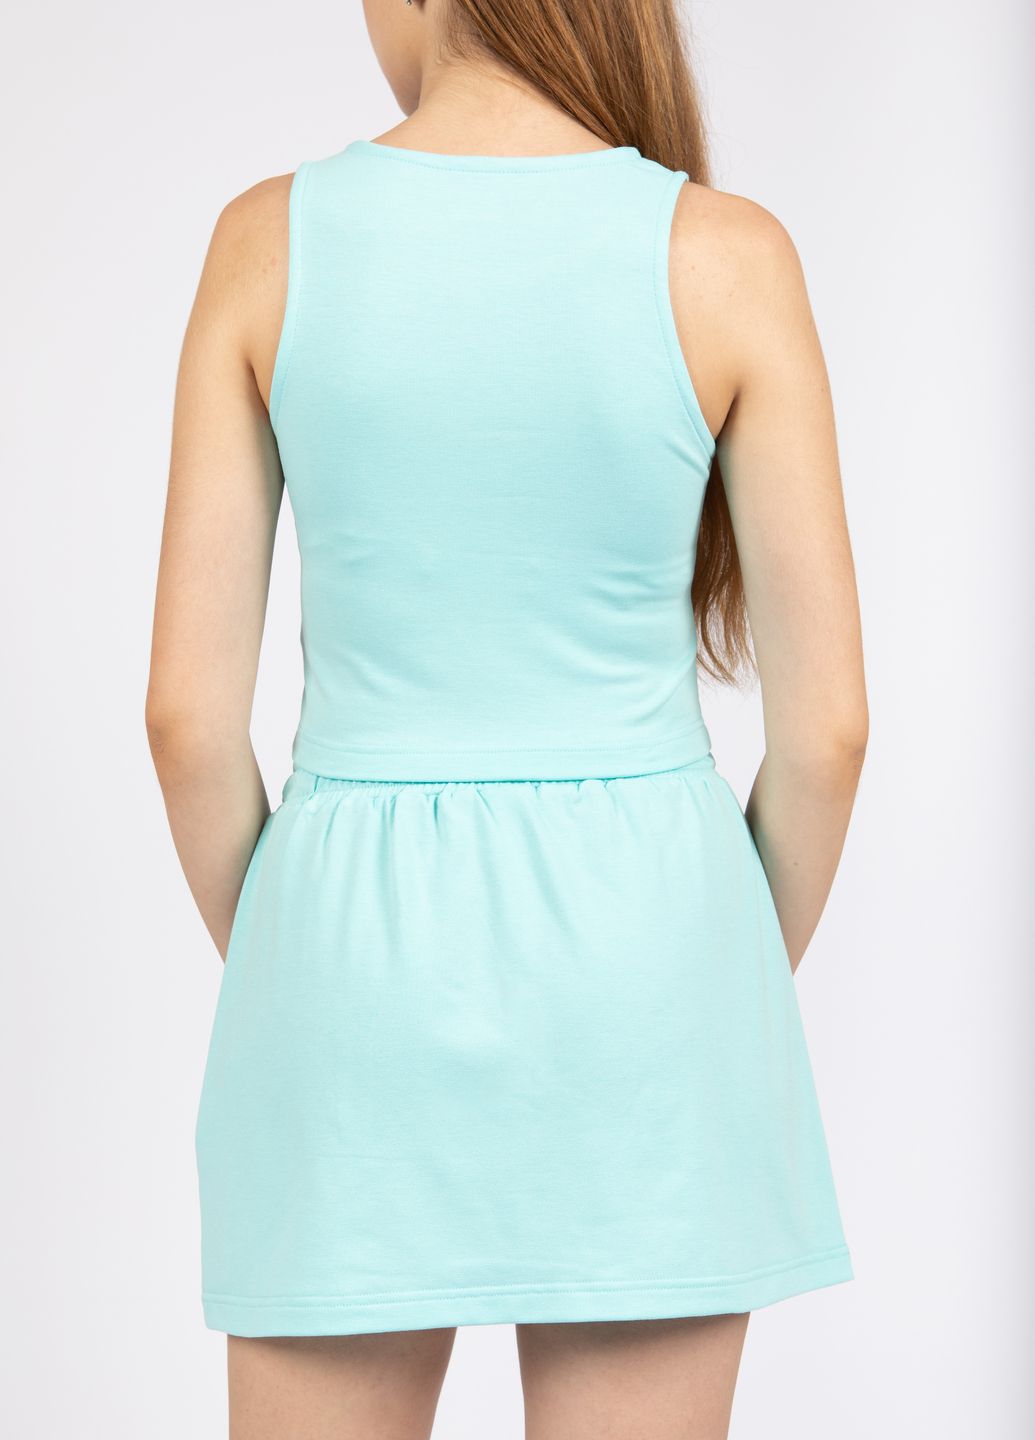 Купить Мини юбка Merlini Кале 400000007 - Голубой, 42-44 в интернет-магазине